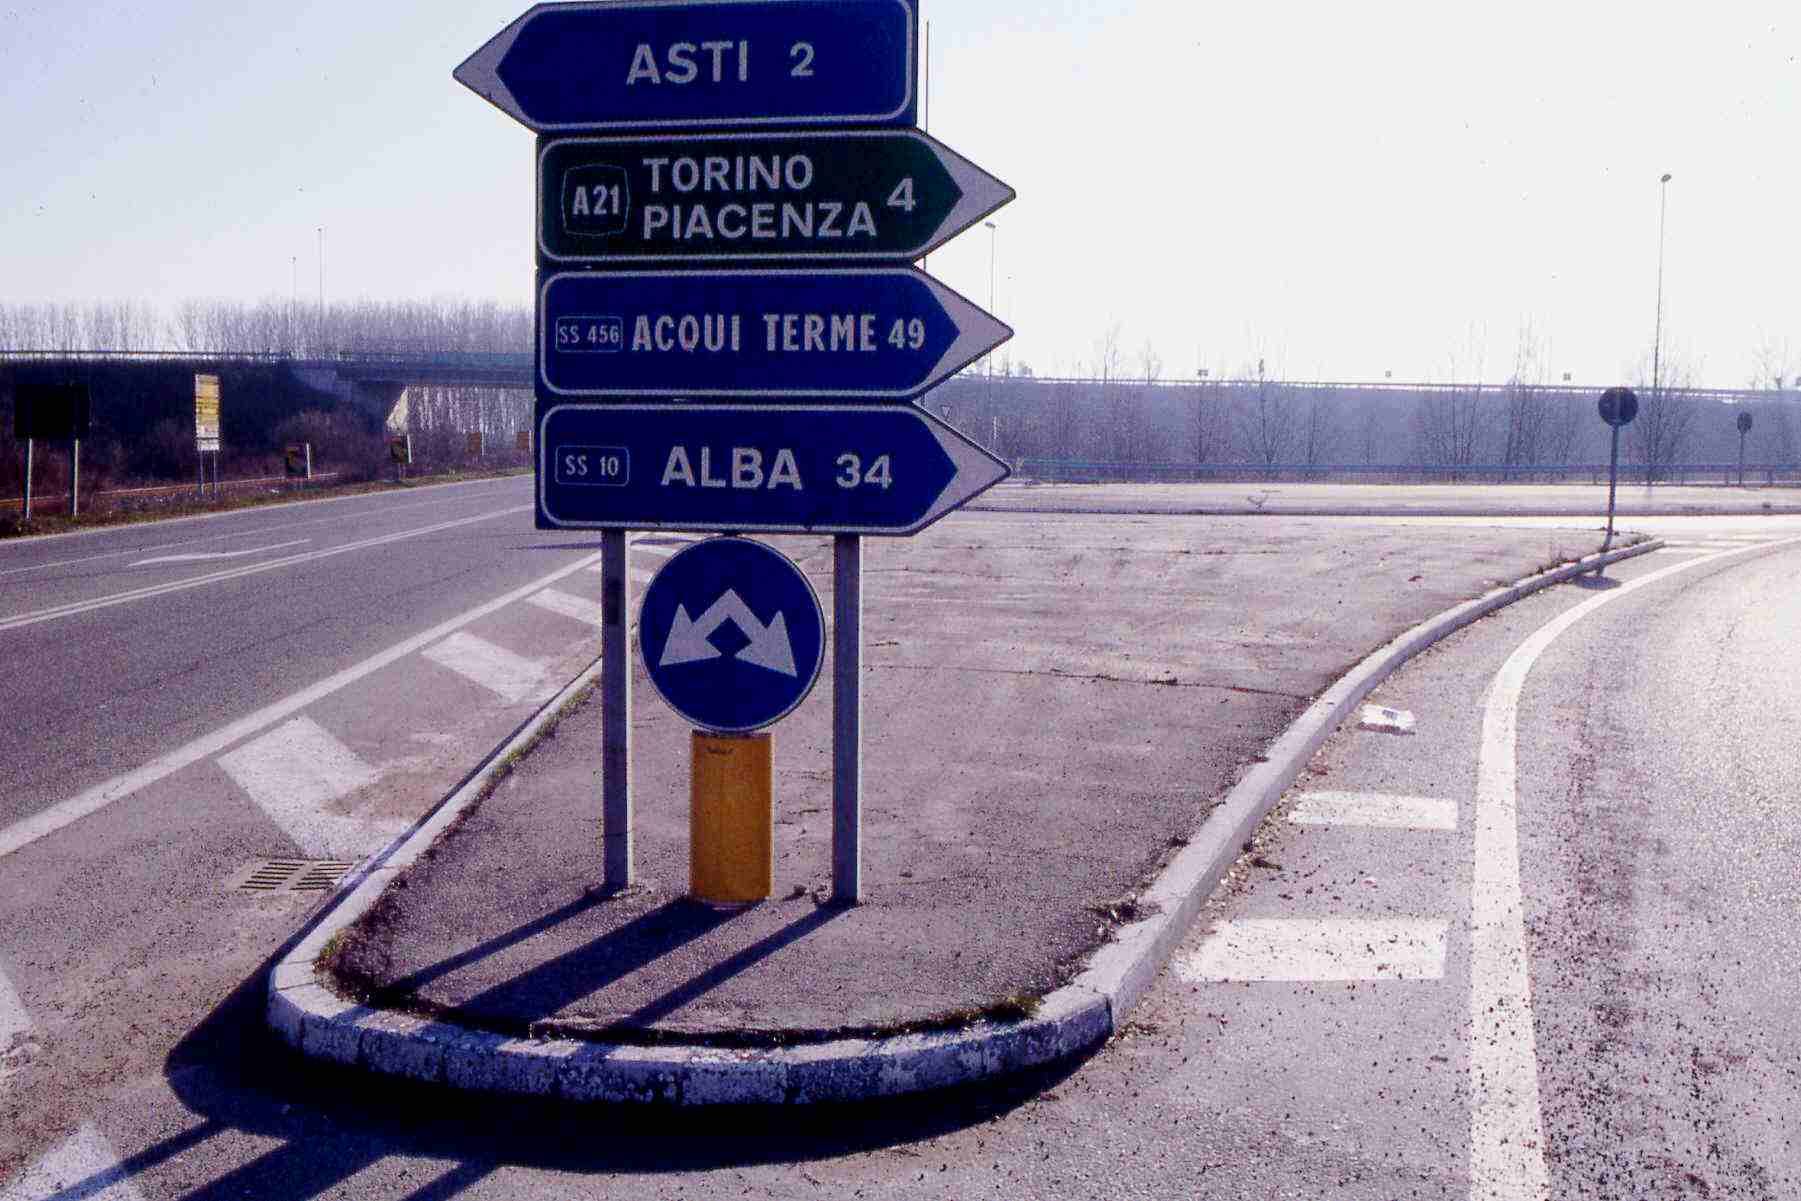 Intersezione stradale tradizionale con aiuole prive di sistemazione a verde e di scarso valore paesaggistico (Corso Casale - Asti). 